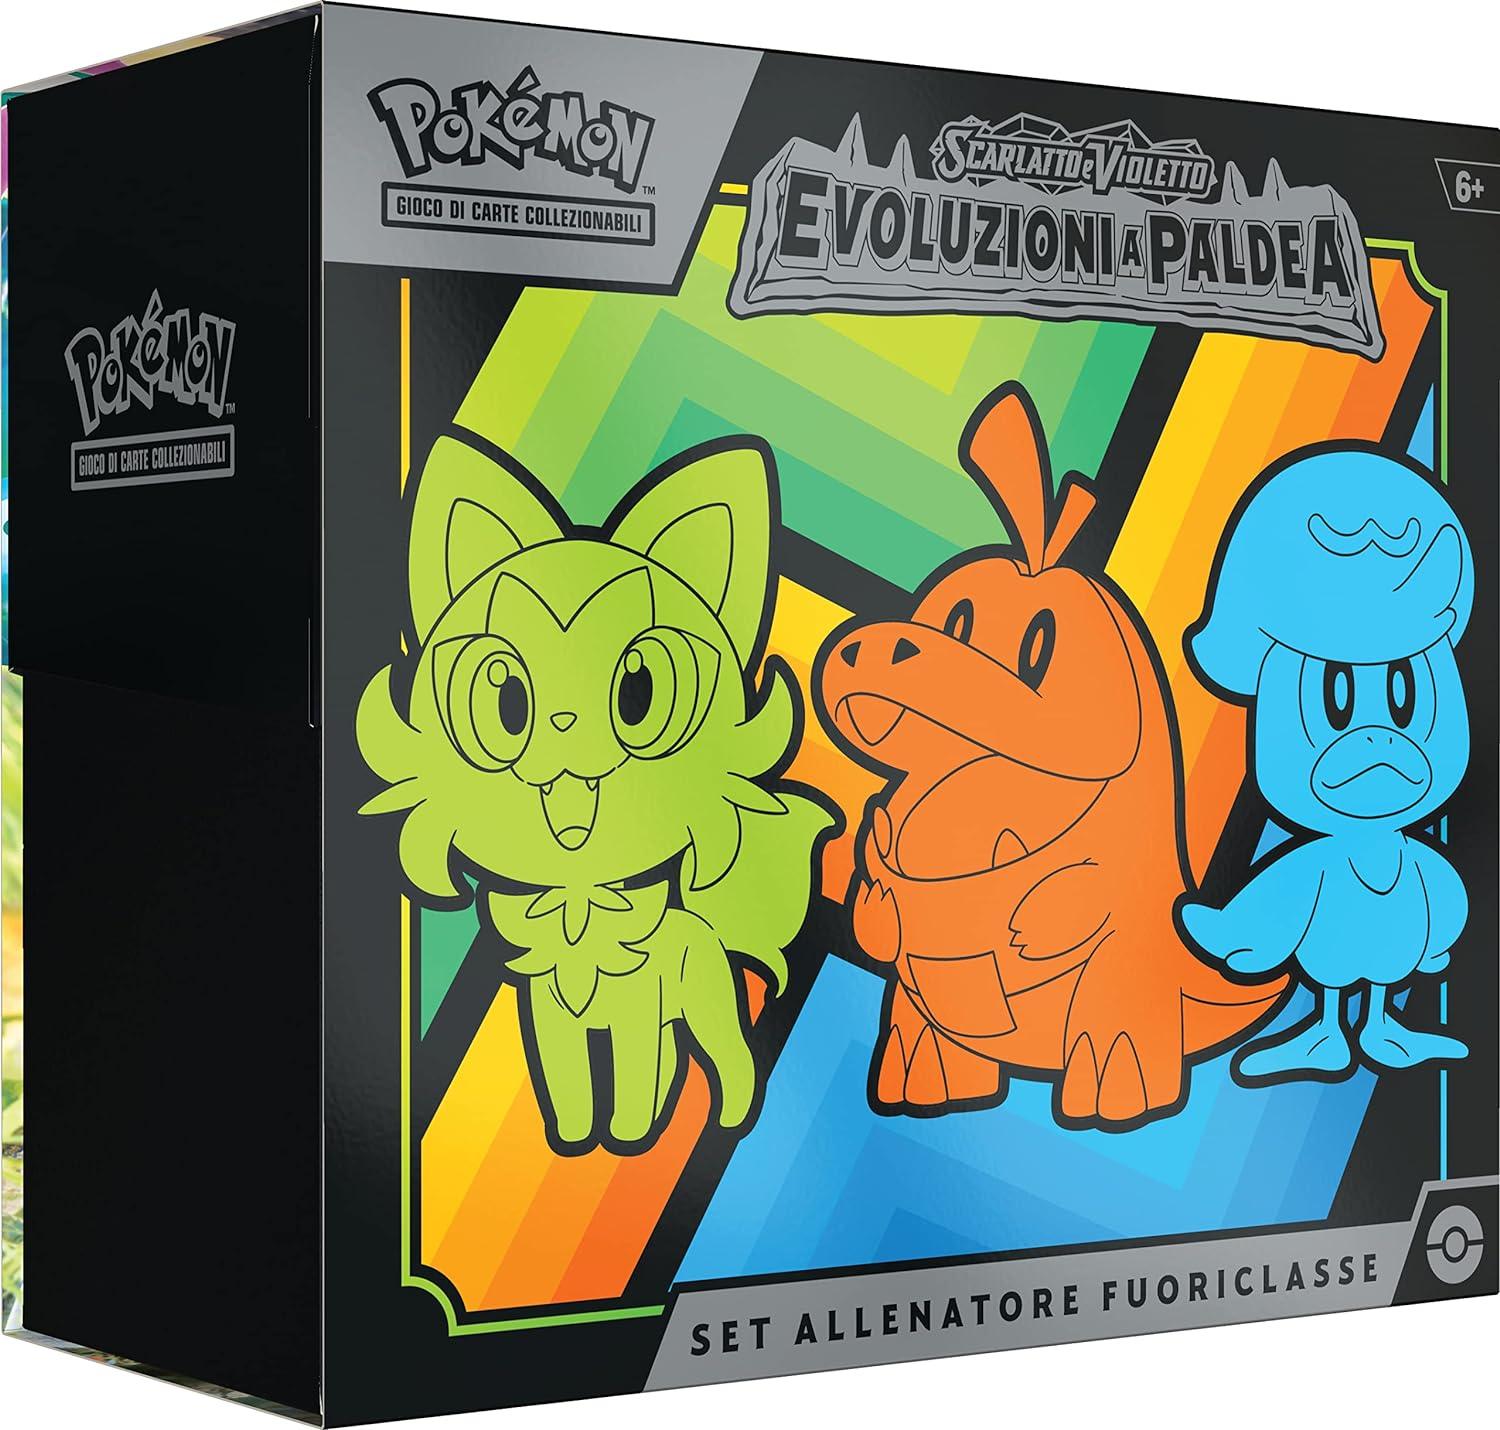 Pokemon - Set Allenatore - ScarlattoVioletto - Evoluzioni a Paldea - Magic Dreams Store